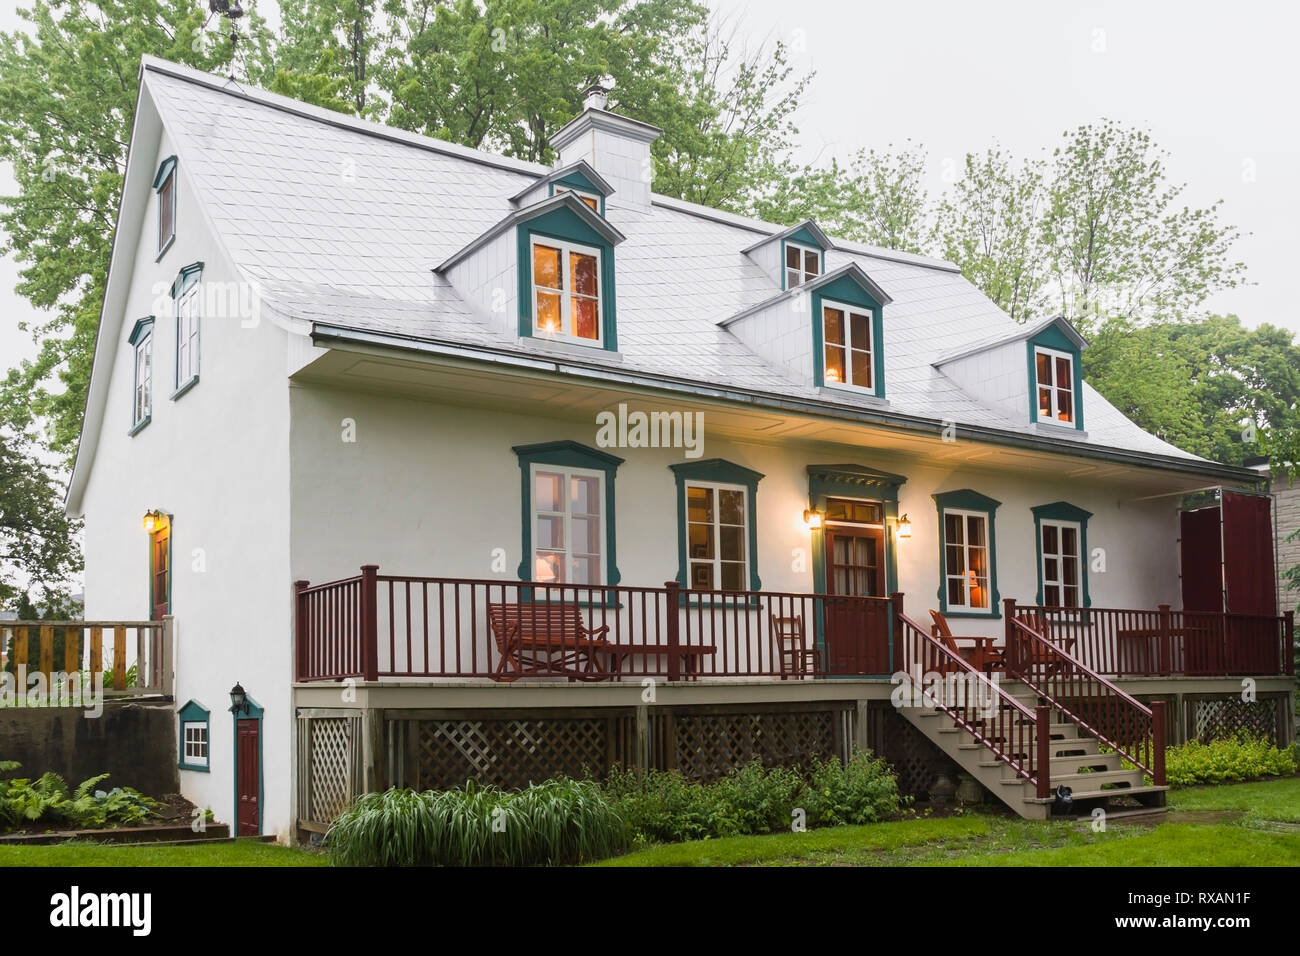 Rückansicht des beleuchteten alten, ca. 1805 weißen Raufusses mit burgunderroten und grünen Zierstreifen im kanadischen Cottage-Stil Haus im späten Frühling, Quebec, Kanada. Dieses Bild ist Eigentum freigegeben. CUPR0323 Stockfoto